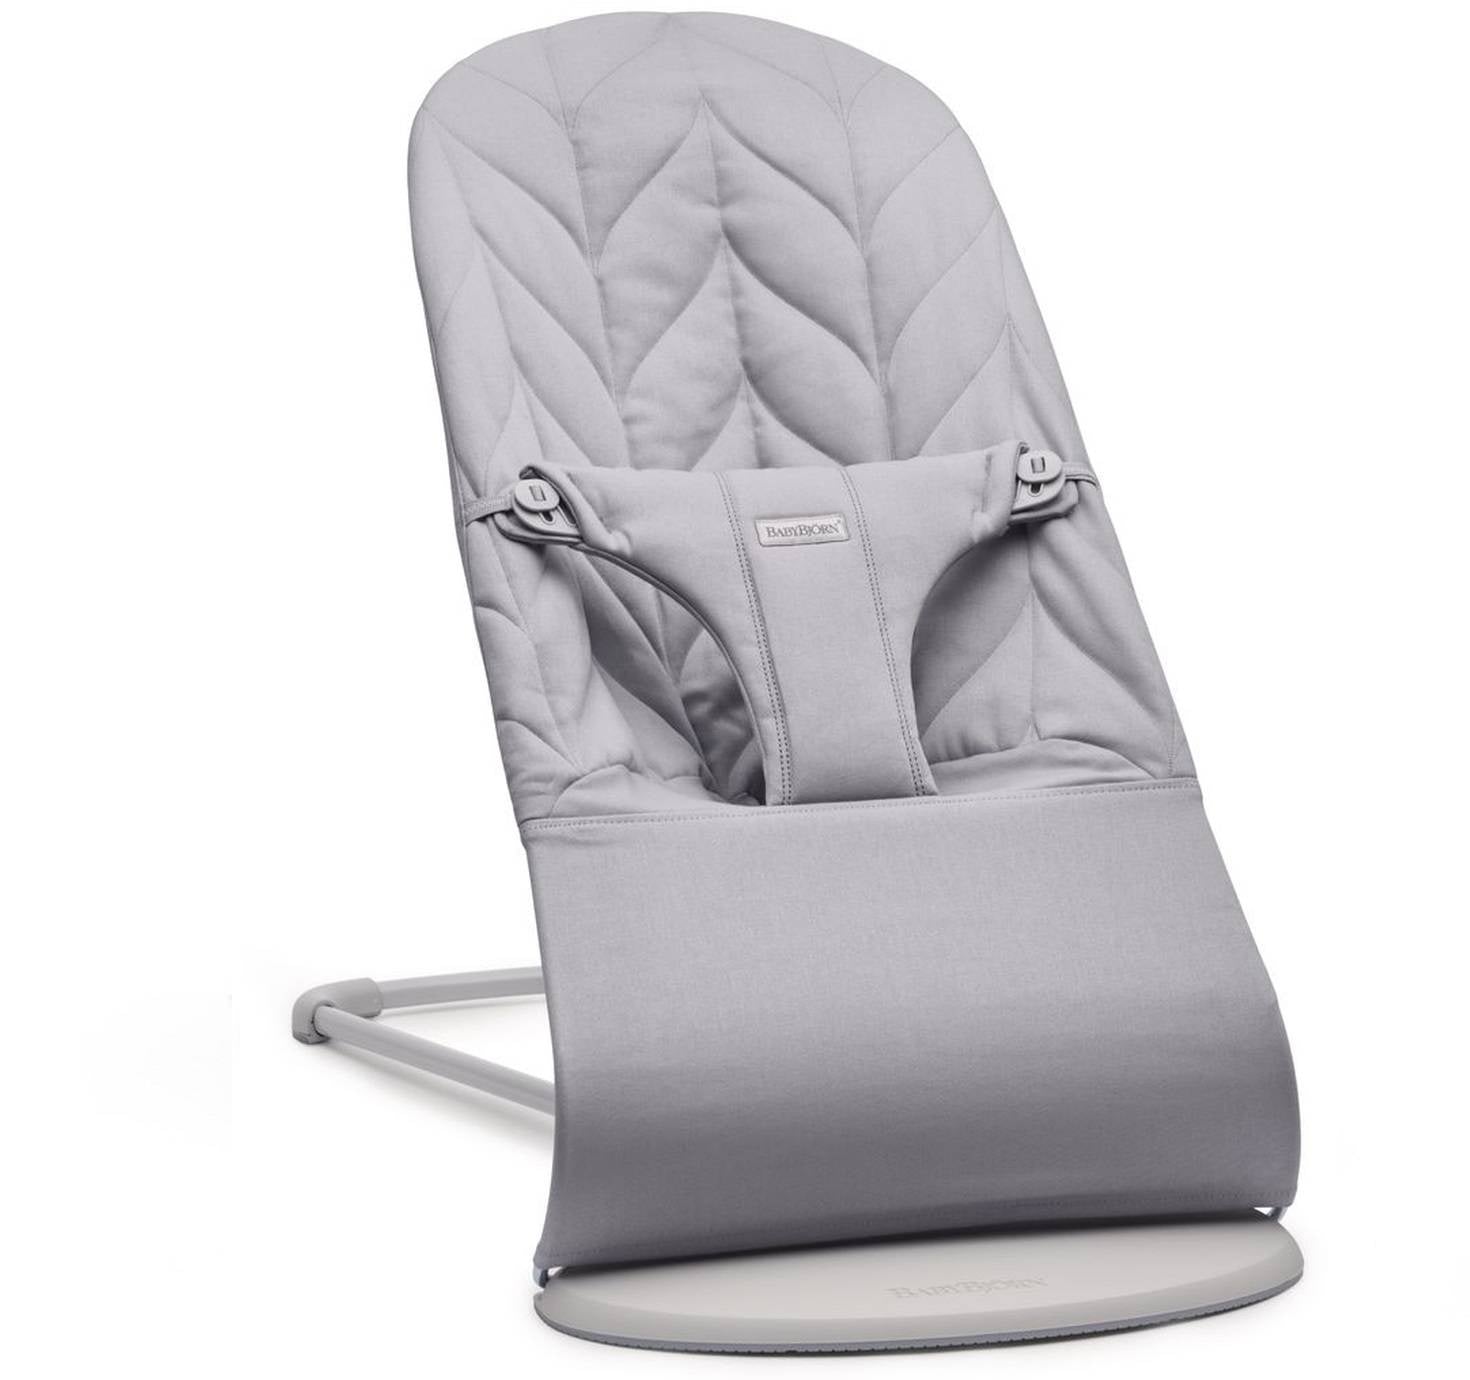 Babybjorn - Bliss Woven deckchair, petal quilt, light gray